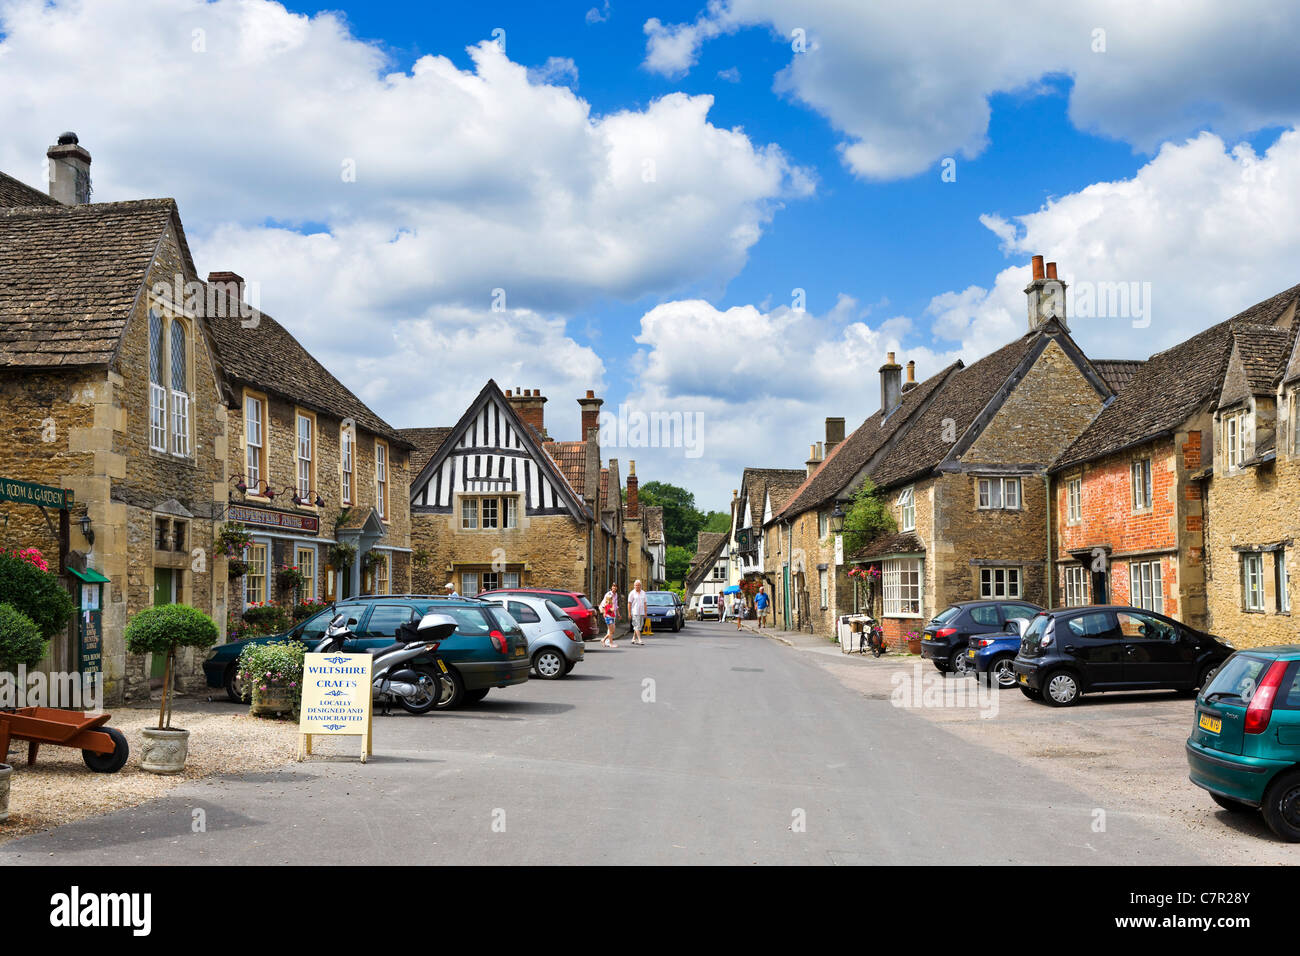 Church Street, en el centro del pintoresco pueblo de Lacock, cerca de Chippenham, Wiltshire, Inglaterra, Reino Unido. Foto de stock